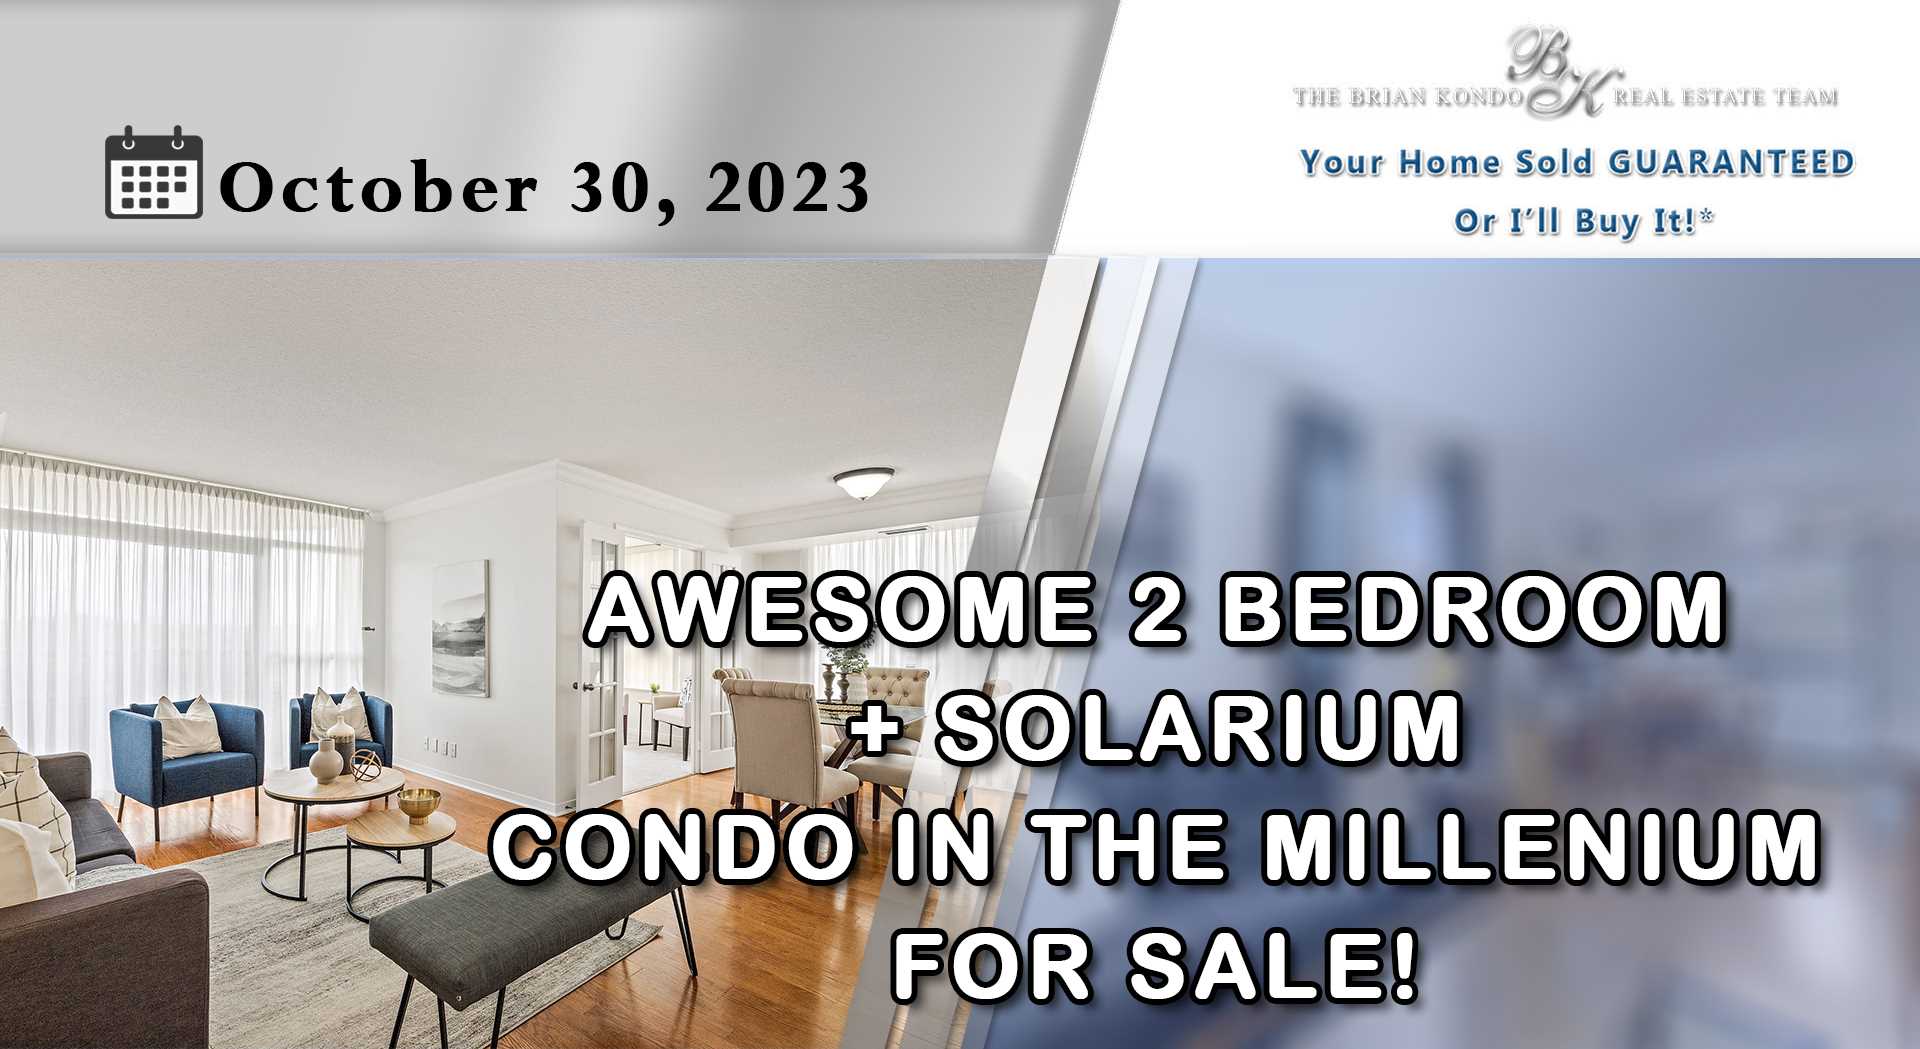 AWESOME 2 BEDROOM + SOLARIUM CONDO IN THE MILLENIUM FOR SALE!